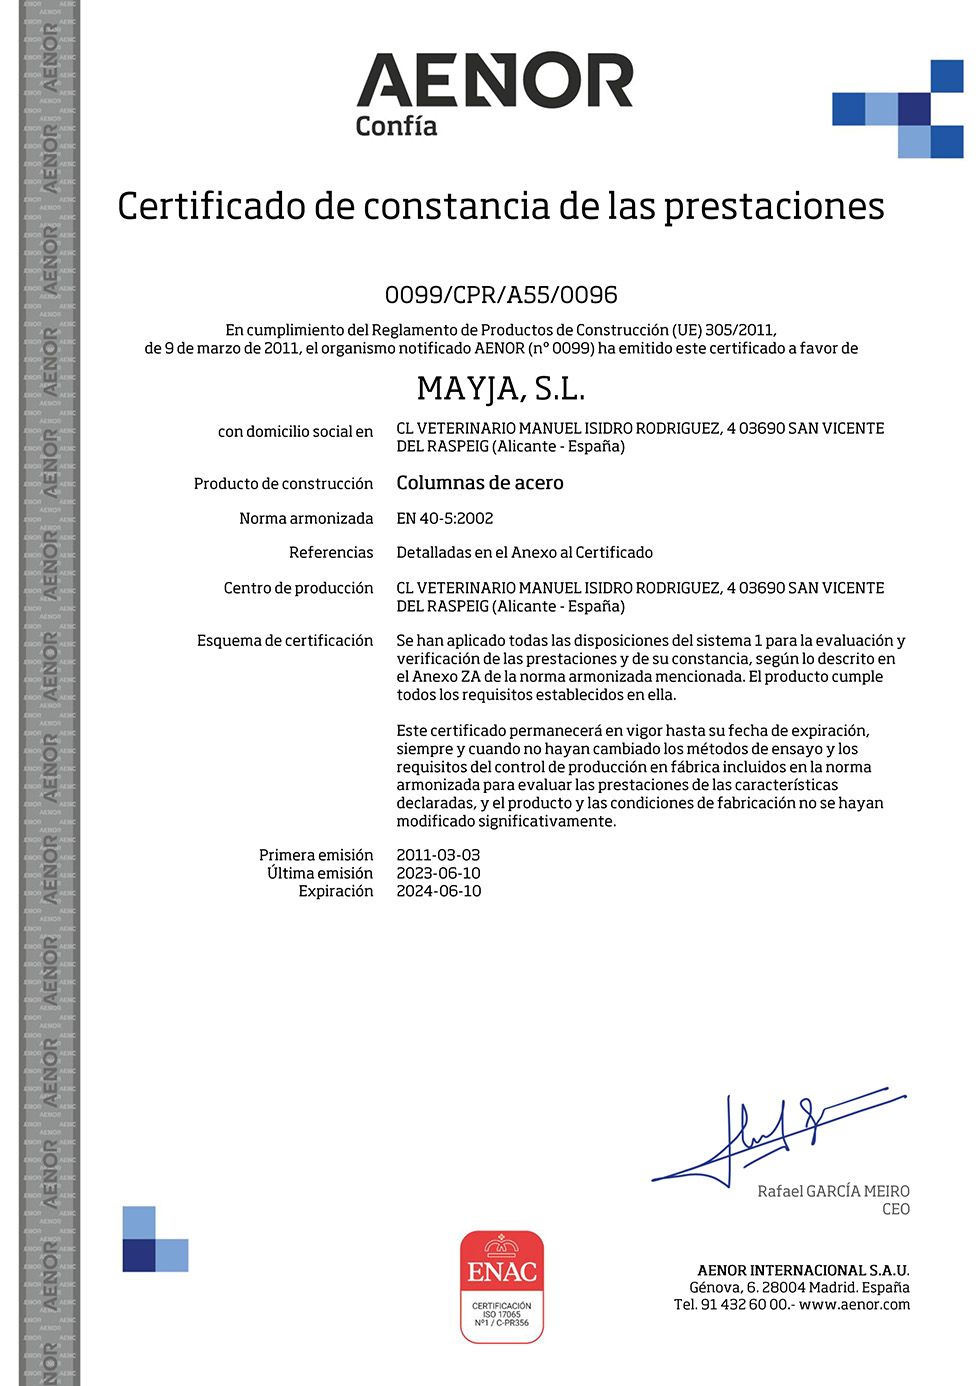 Certificado de Conformidad CE - Norma EN 40-5